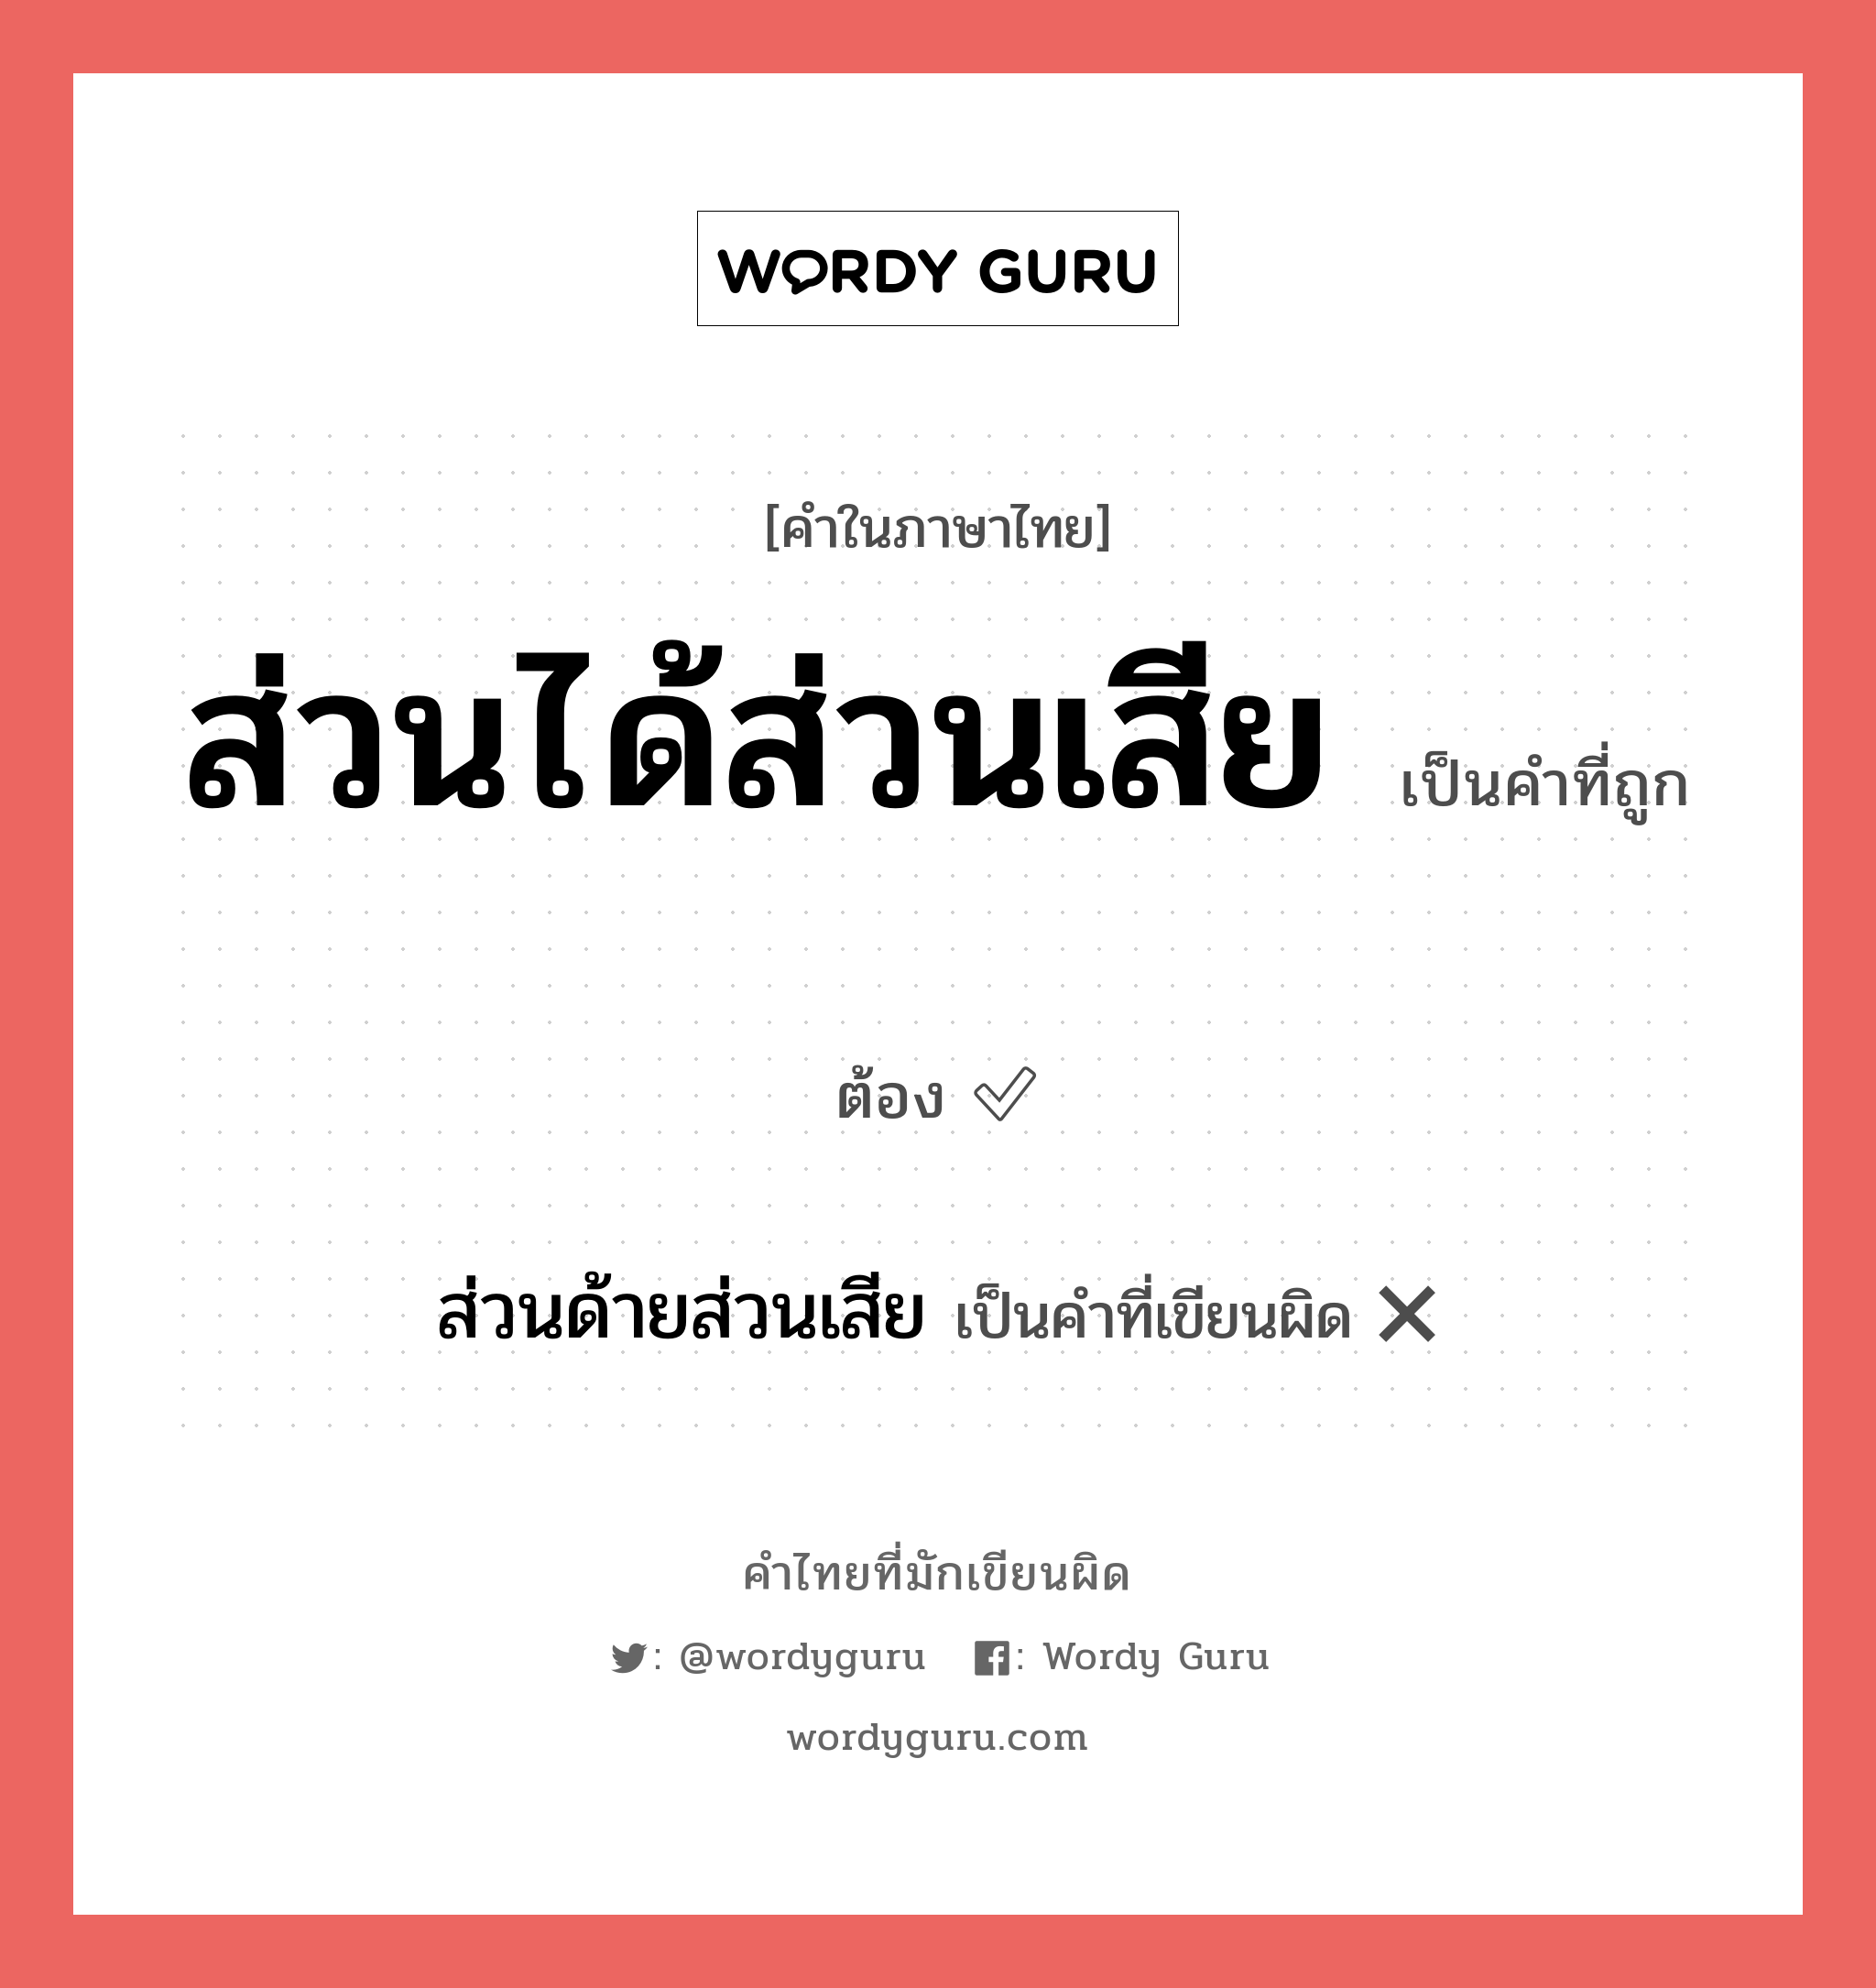 ส่วนด้ายส่วนเสีย หรือ ส่วนได้ส่วนเสีย คำไหนเขียนถูก?, คำในภาษาไทยที่มักเขียนผิด ส่วนด้ายส่วนเสีย คำที่ผิด ❌ ส่วนได้ส่วนเสีย